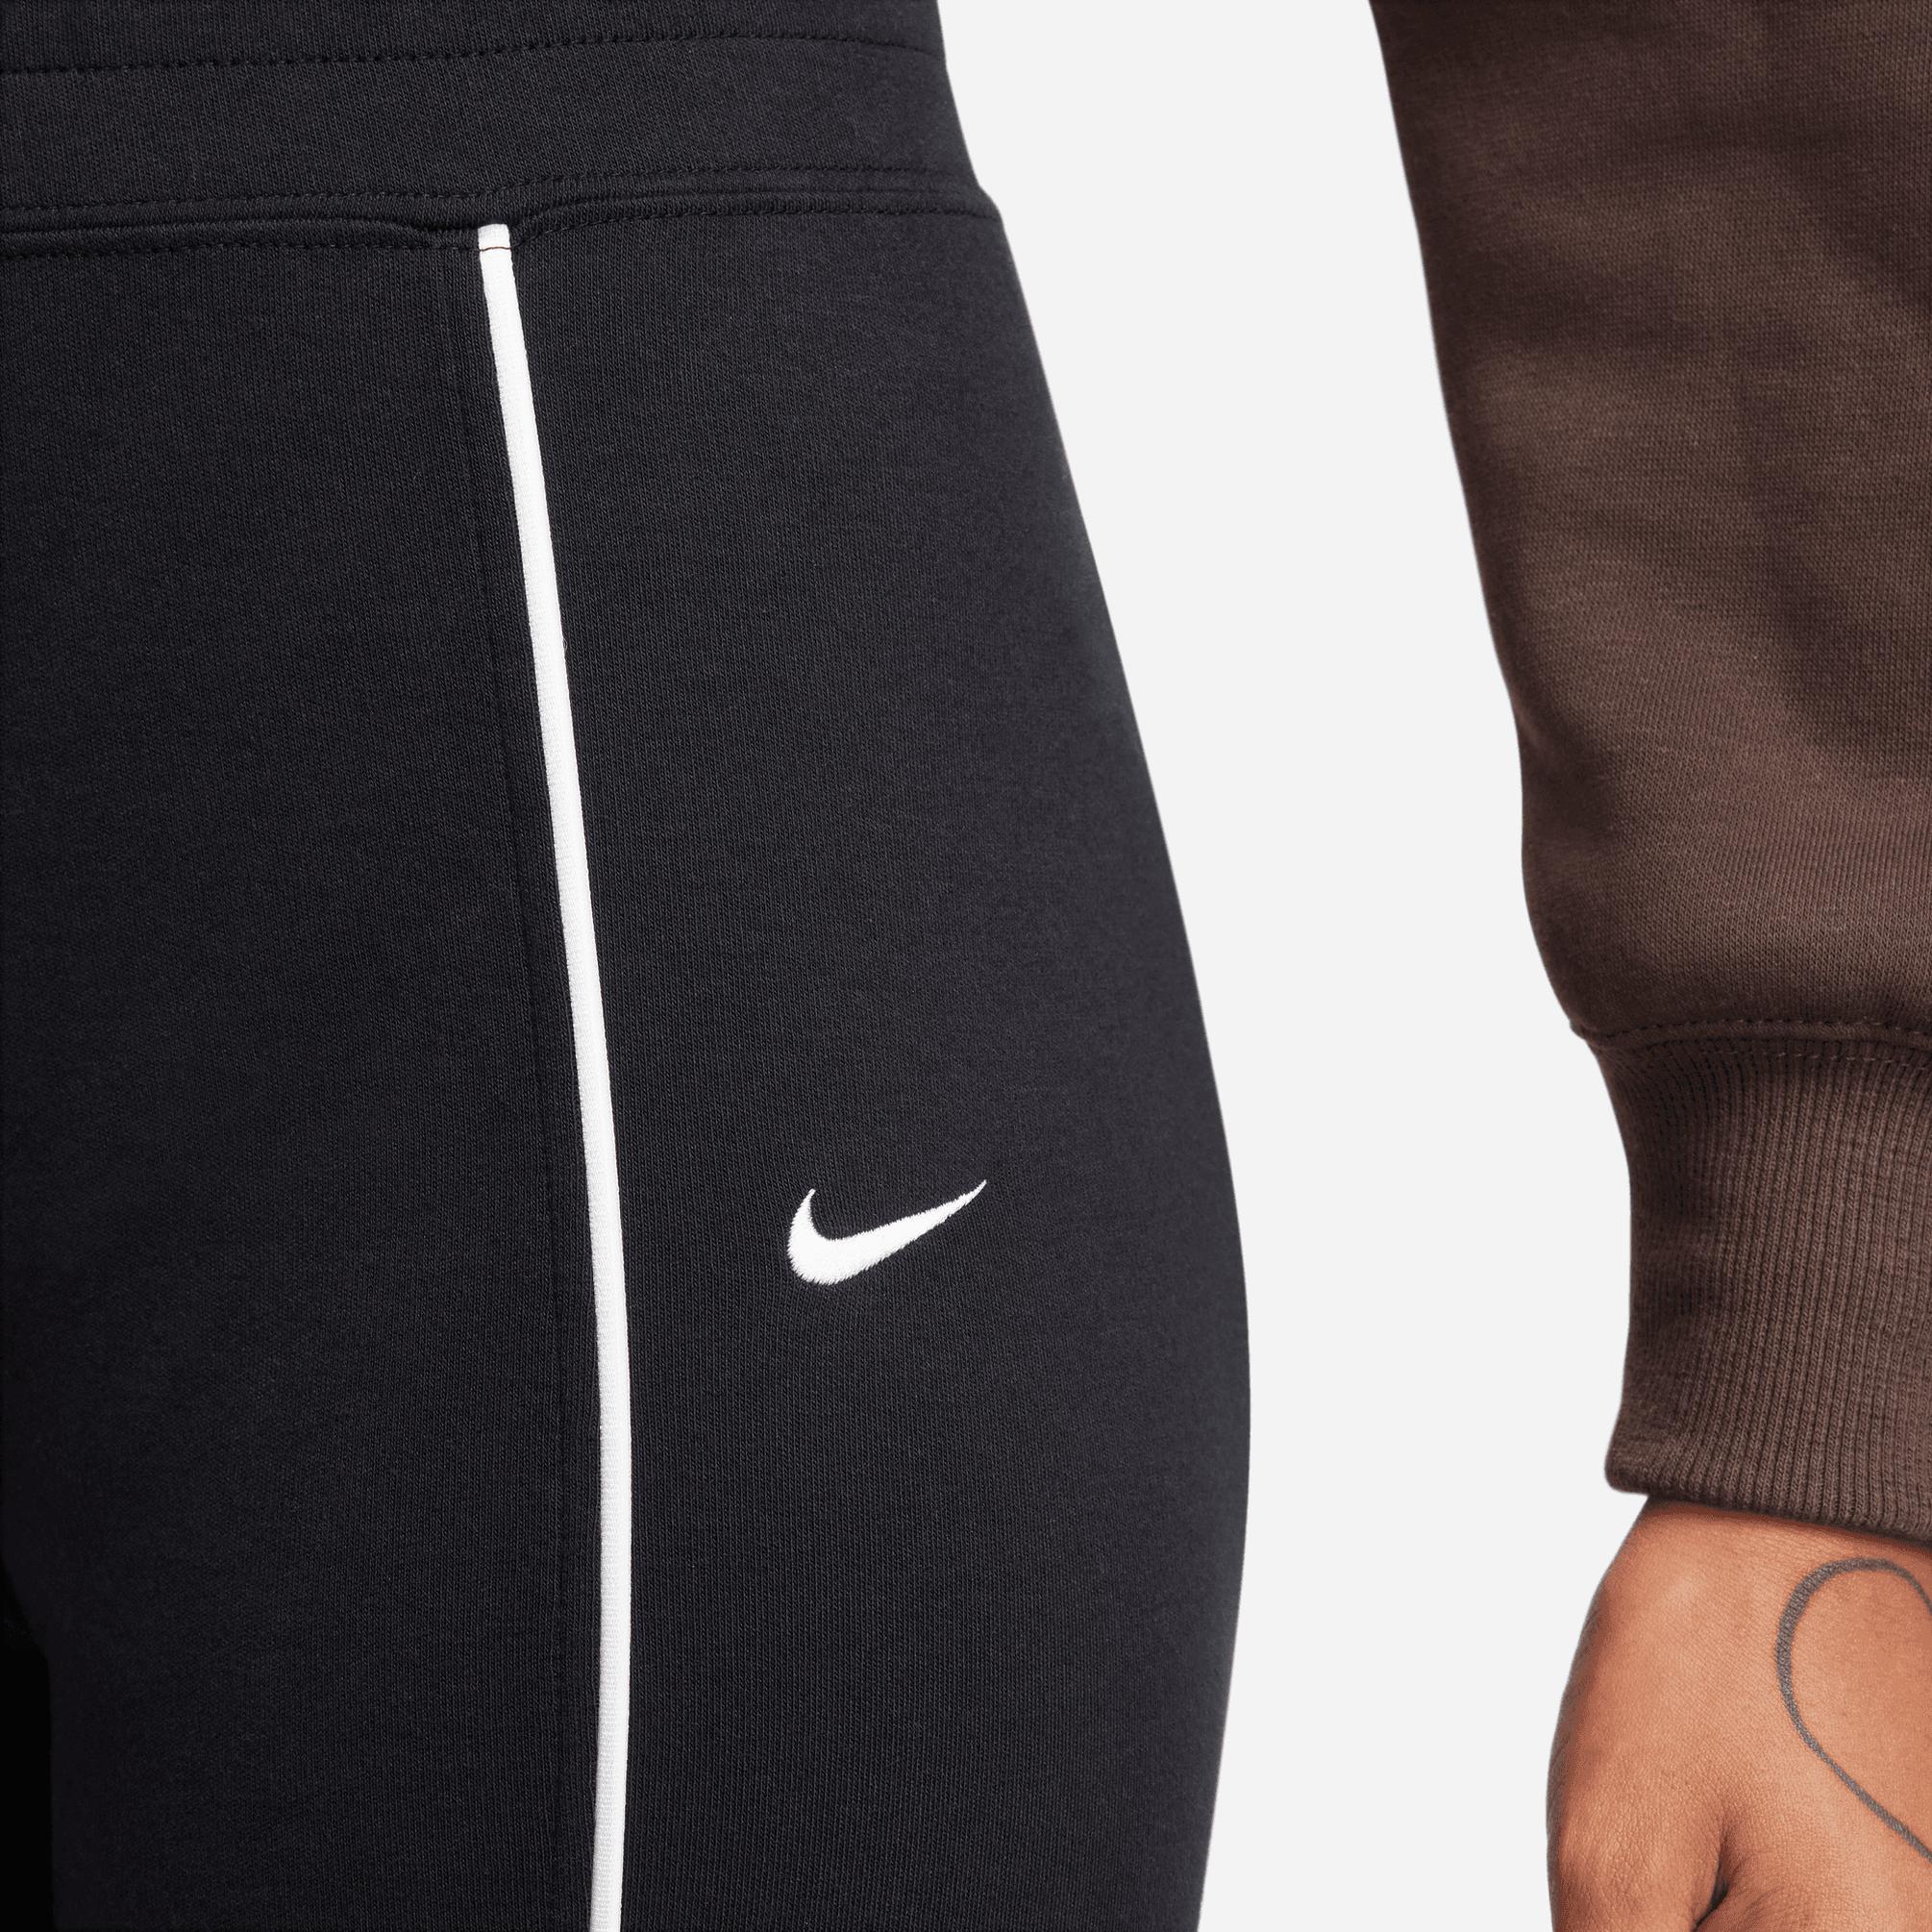  Nike Sportswear Collection Kadın Siyah Eşofman Altı